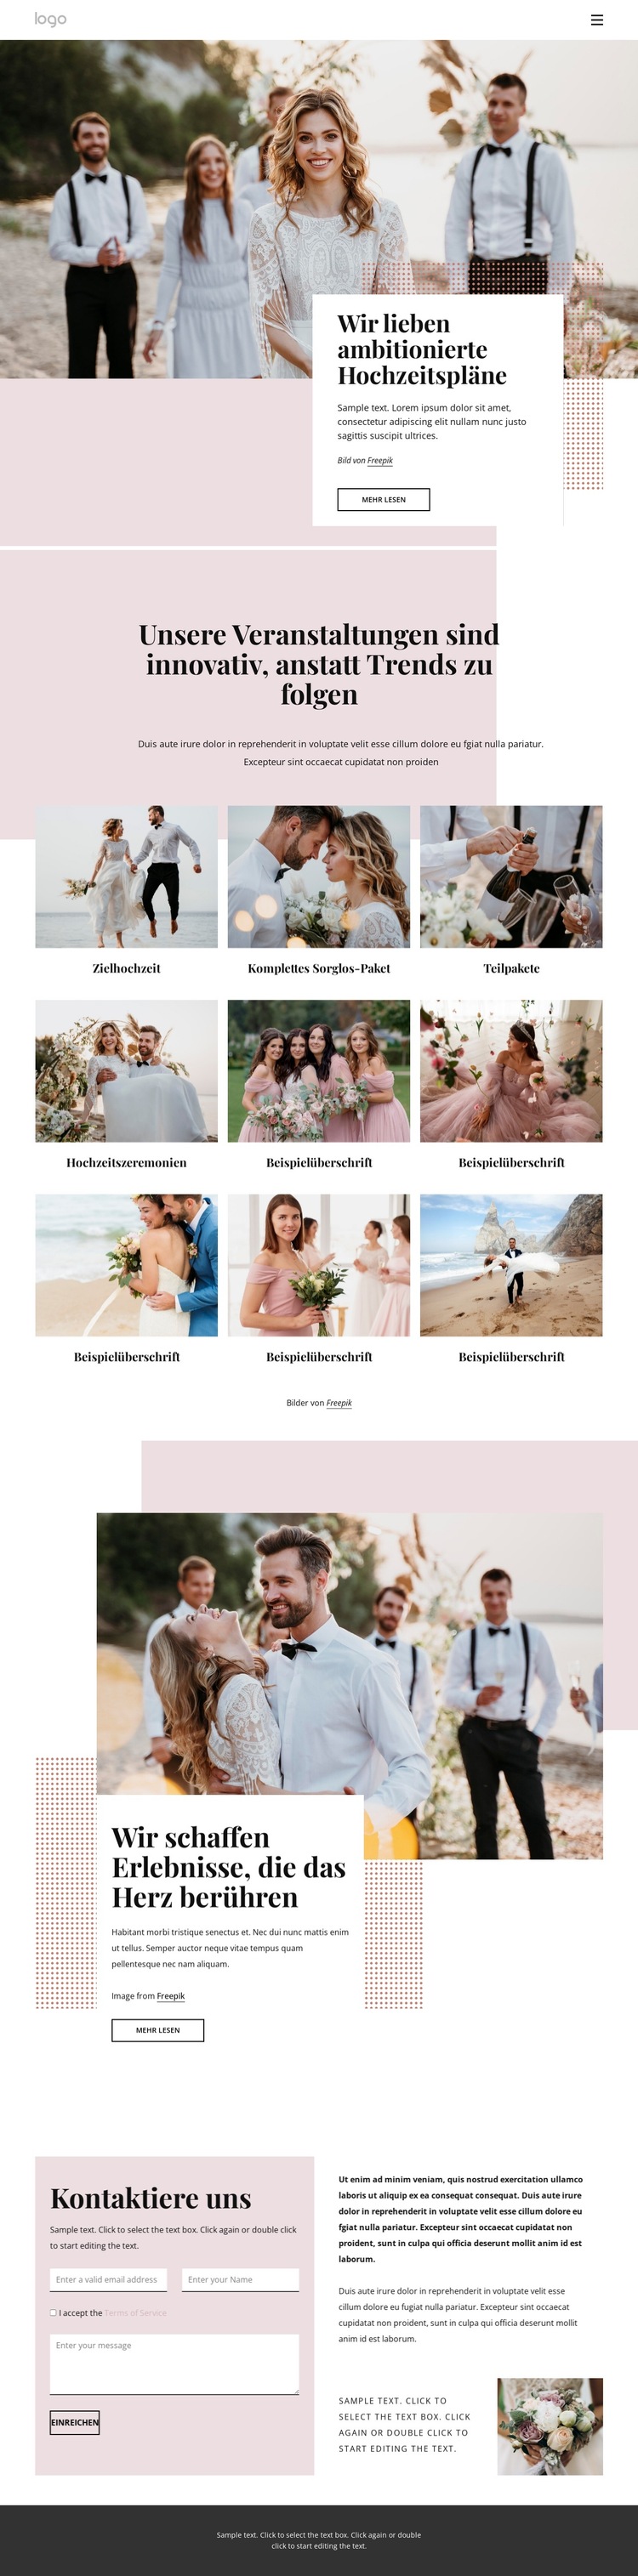 Wir lieben ambitionierte Hochzeitspläne Website-Vorlage